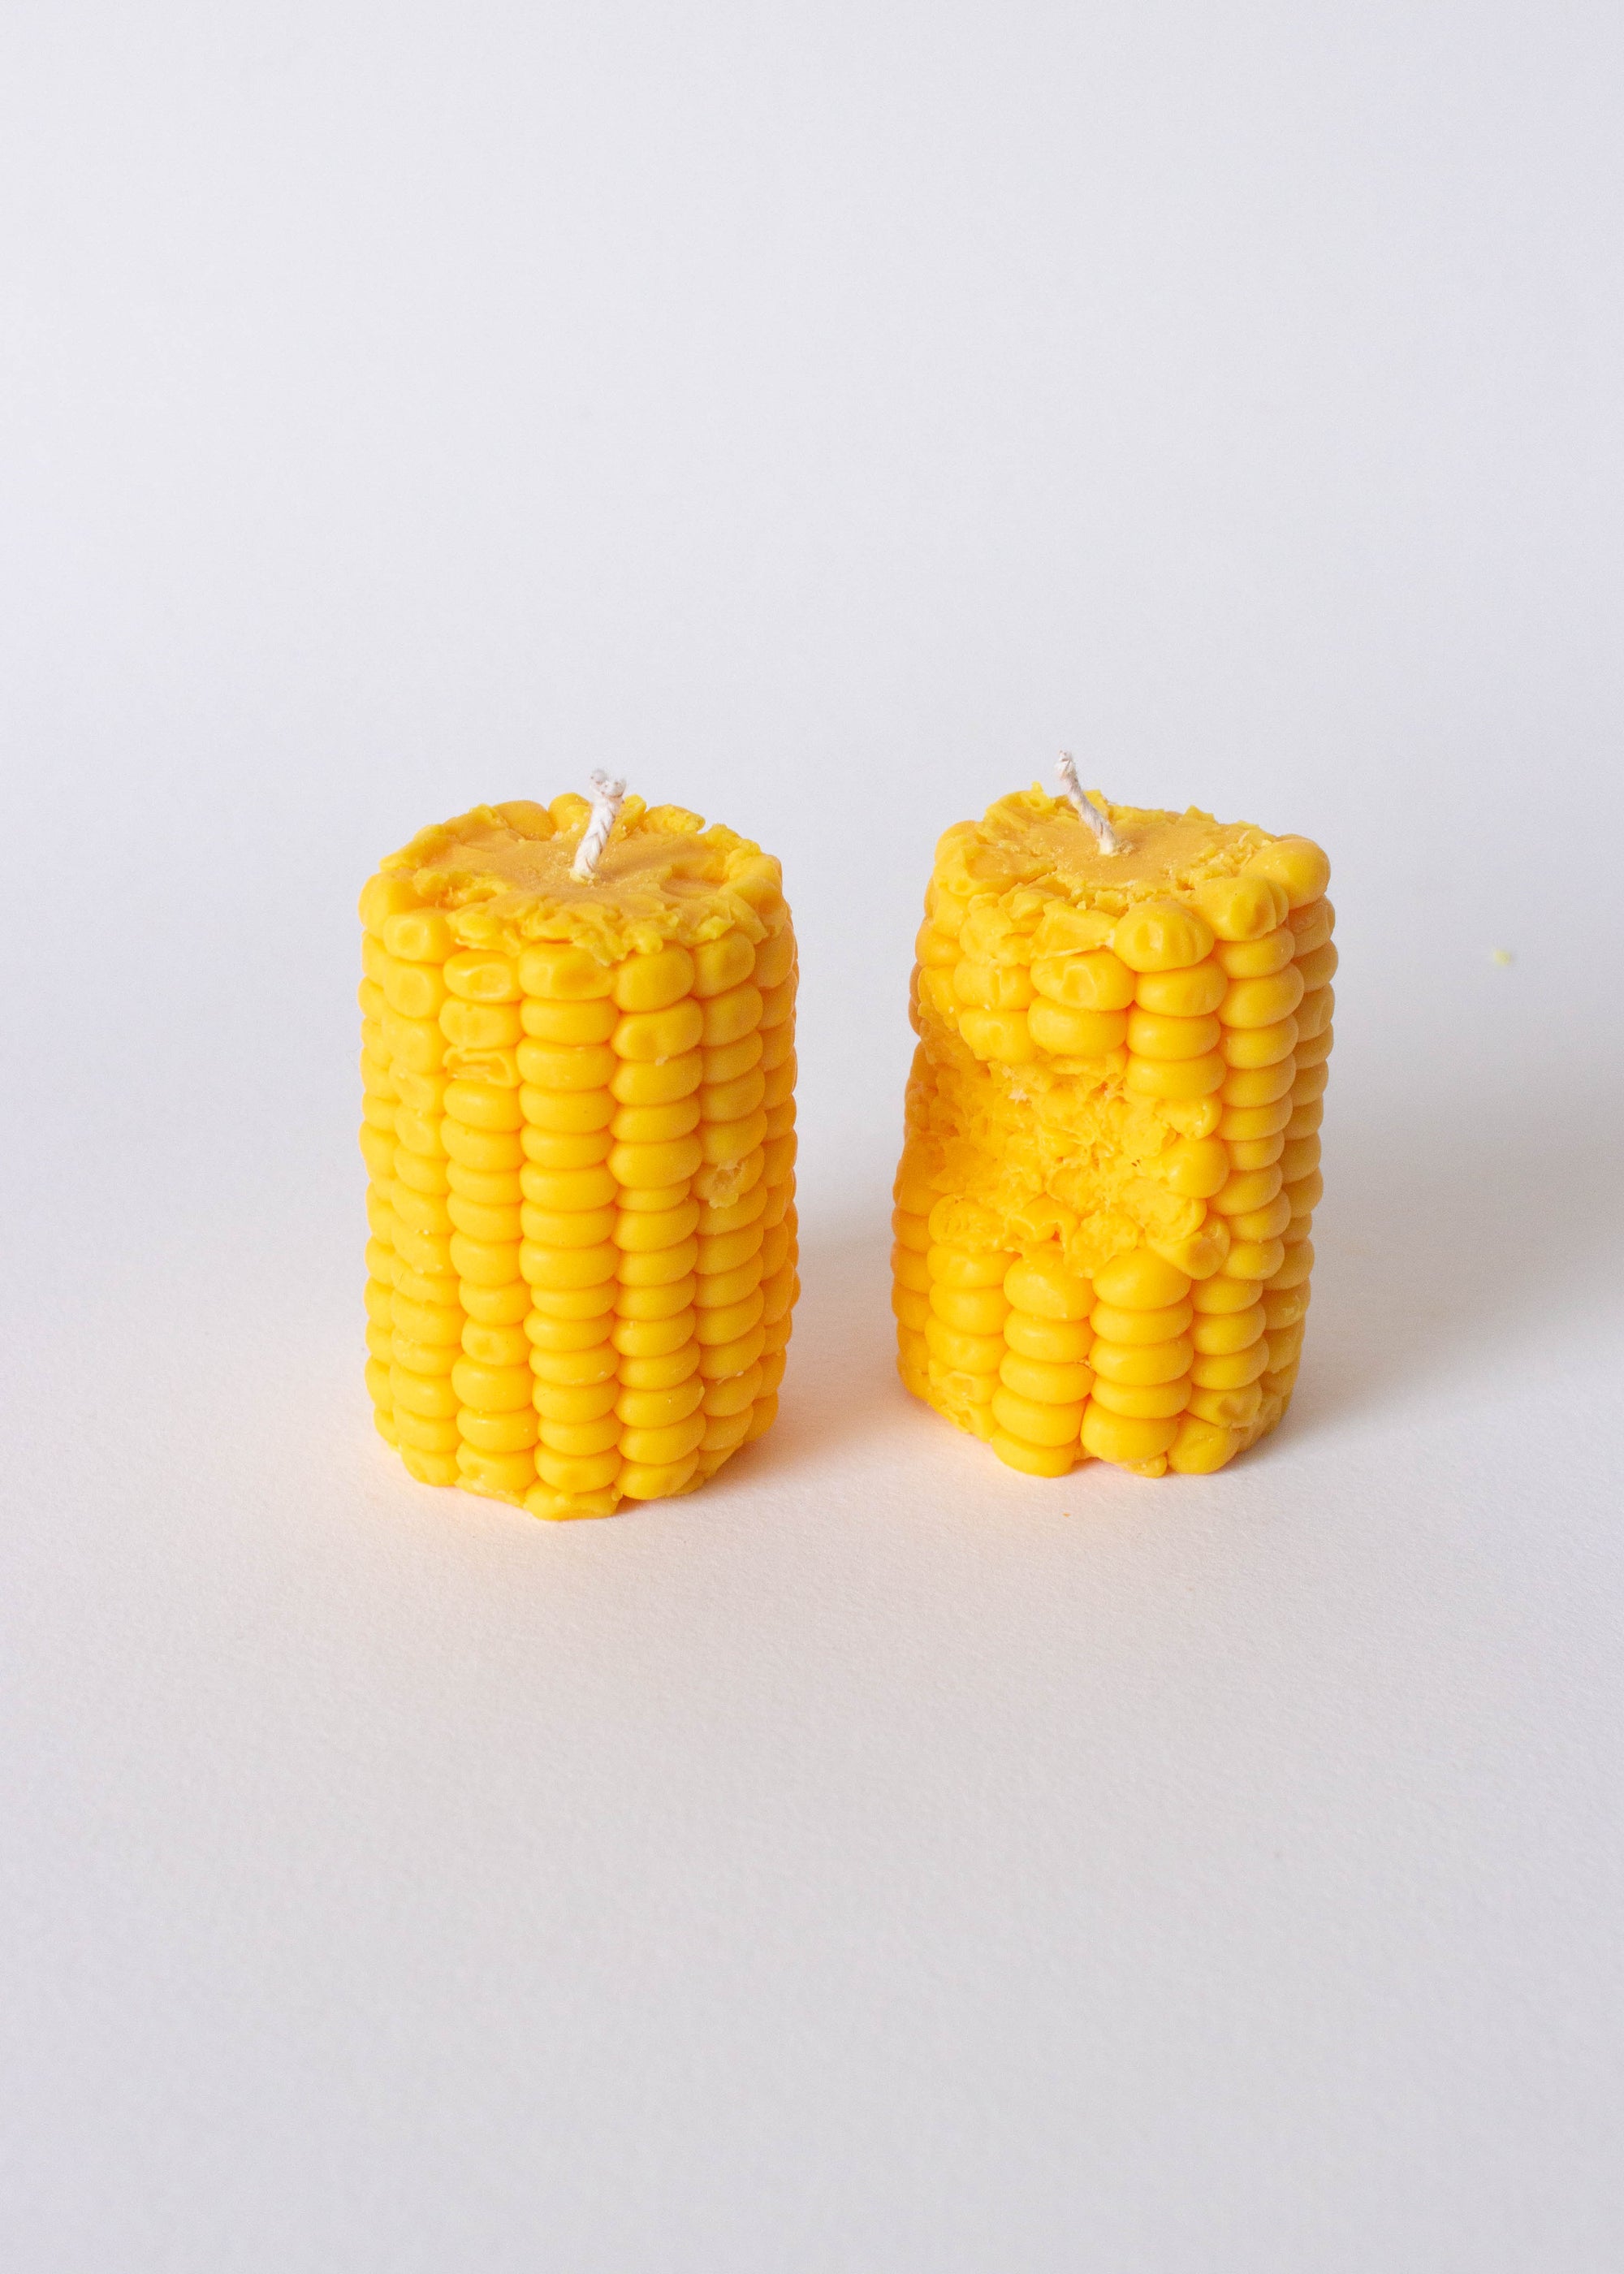 It's Corn! Bundle